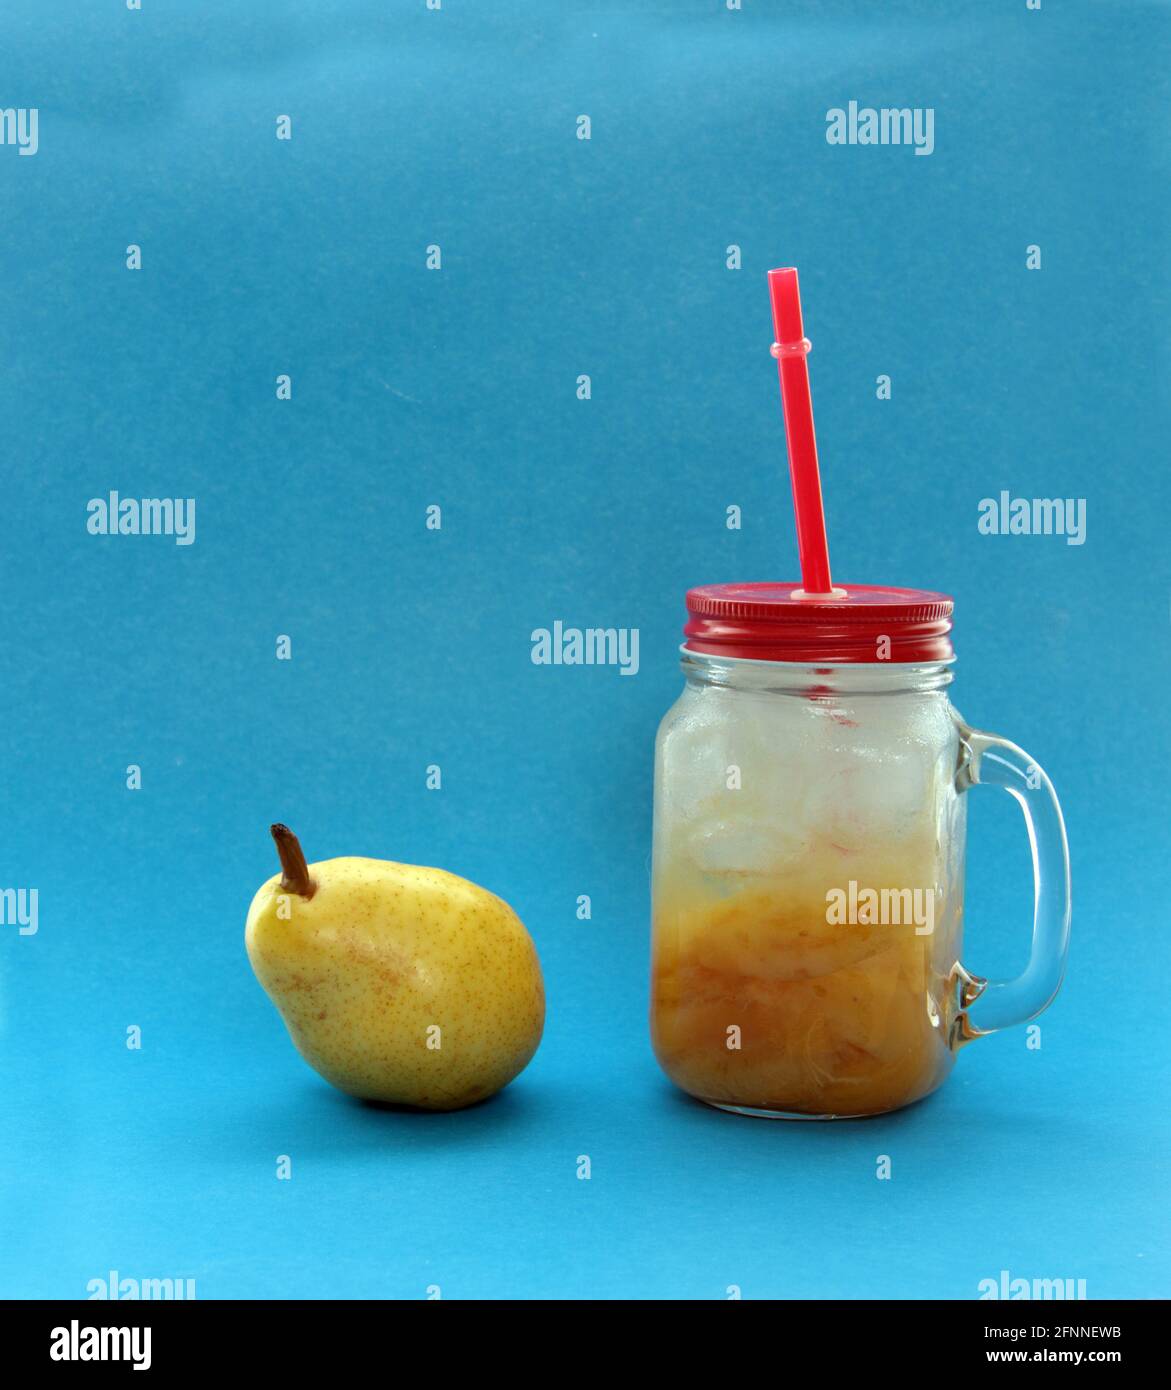 Concepto de alimentación saludable - pera y una taza de compota de pera de hielo aisladas sobre fondo azul. La imagen contiene espacio de copia Foto de stock